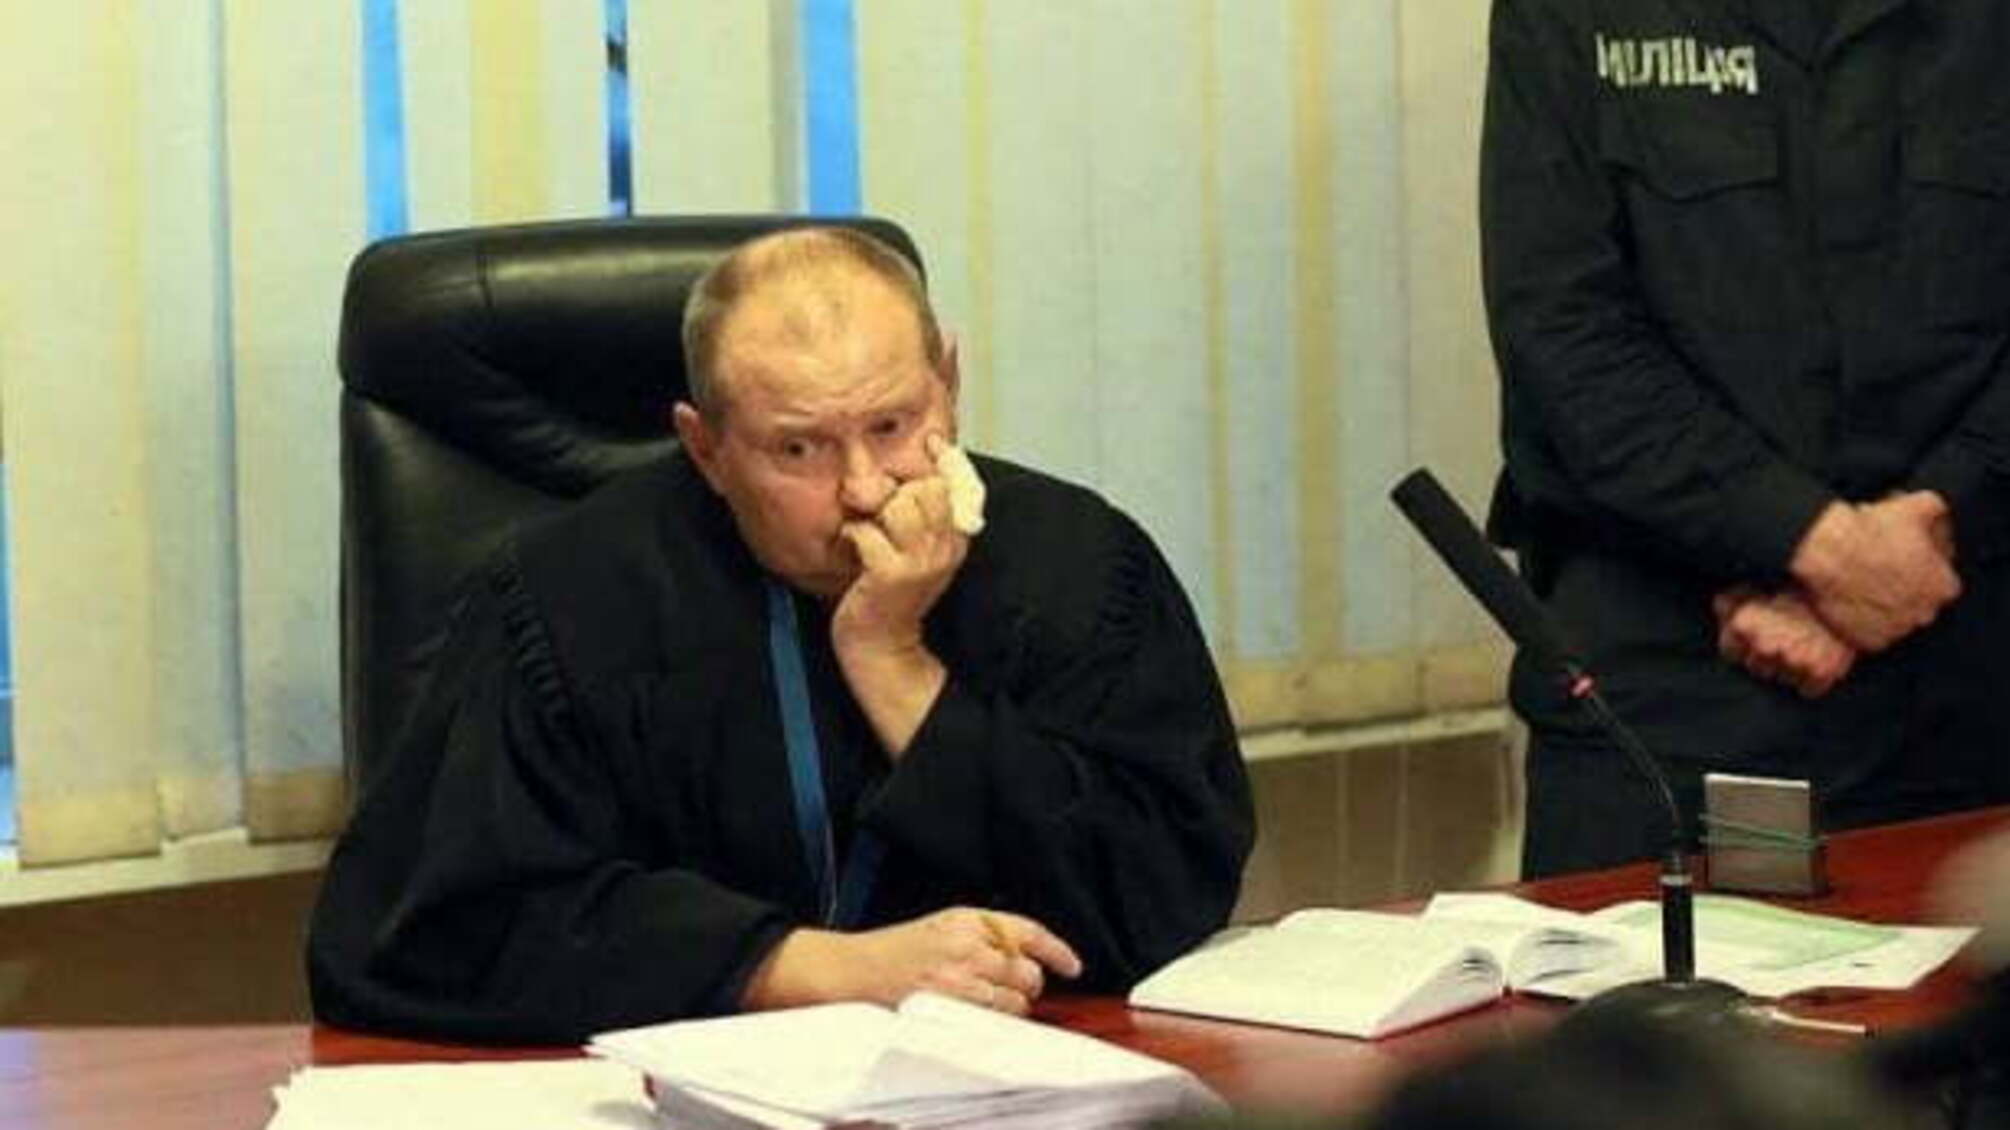 Борислав Береза: Остання новина по судді-хабарнику Чаусу. Це падло таки втекло